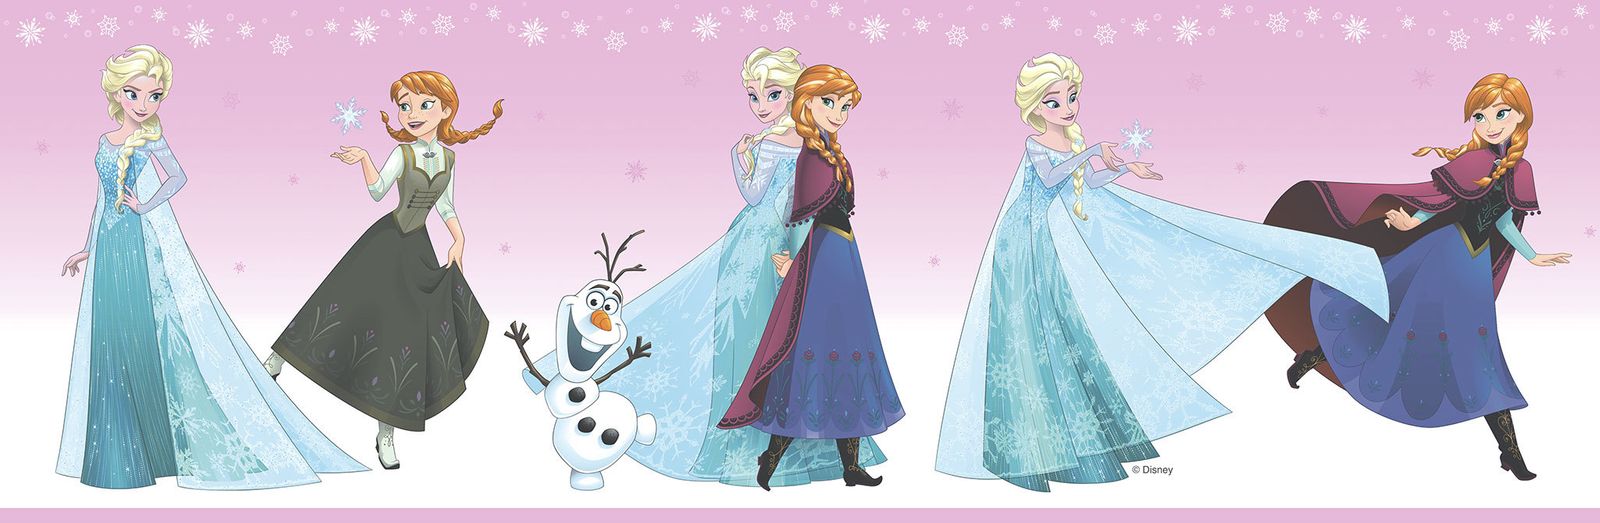 Frozen 2 Elsa And Anna - HD Wallpaper 